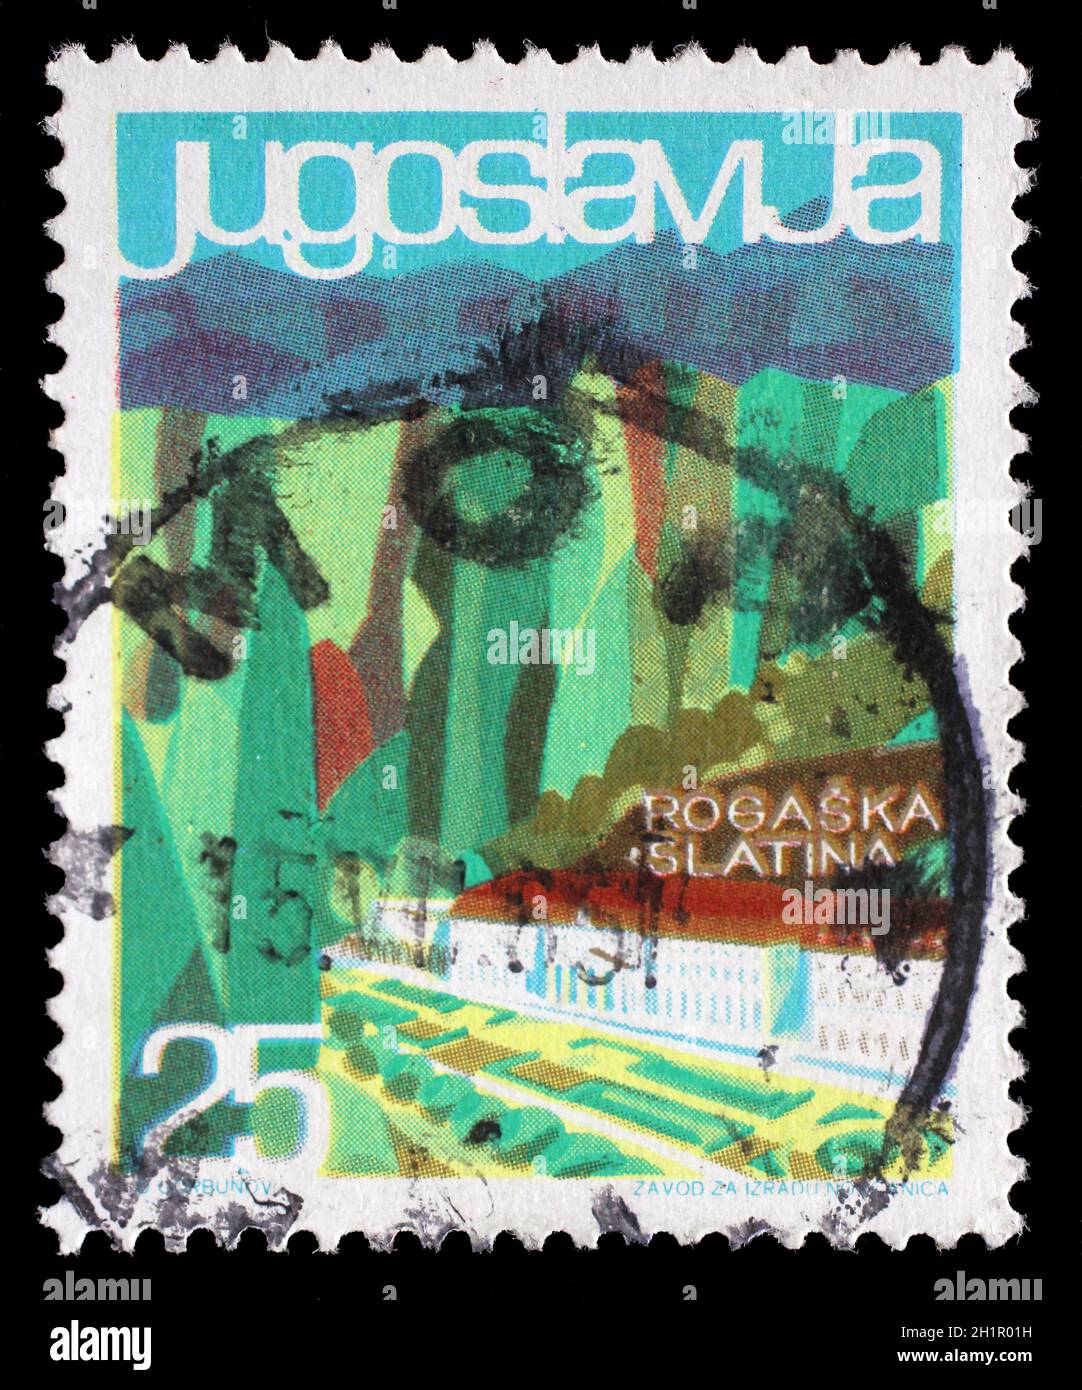 Timbres en Yougoslavie à partir de la question du tourisme local montre Rogaska Slatina, Slovénie, vers 1963. Banque D'Images